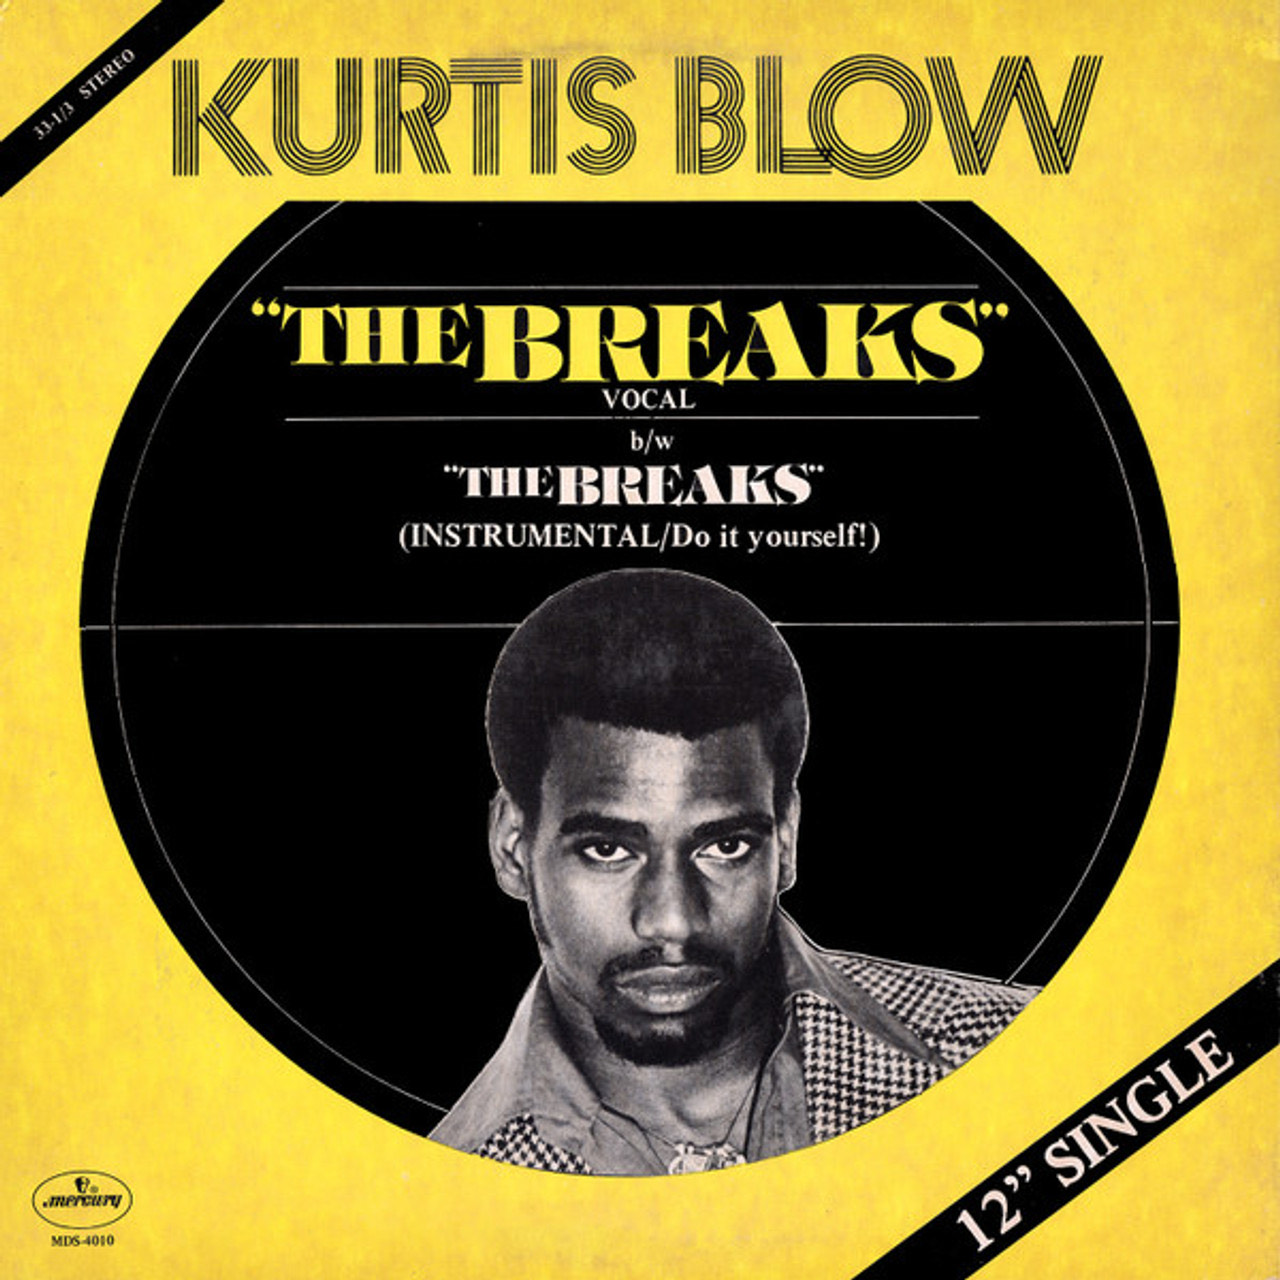 Blondie - "The Breaks"